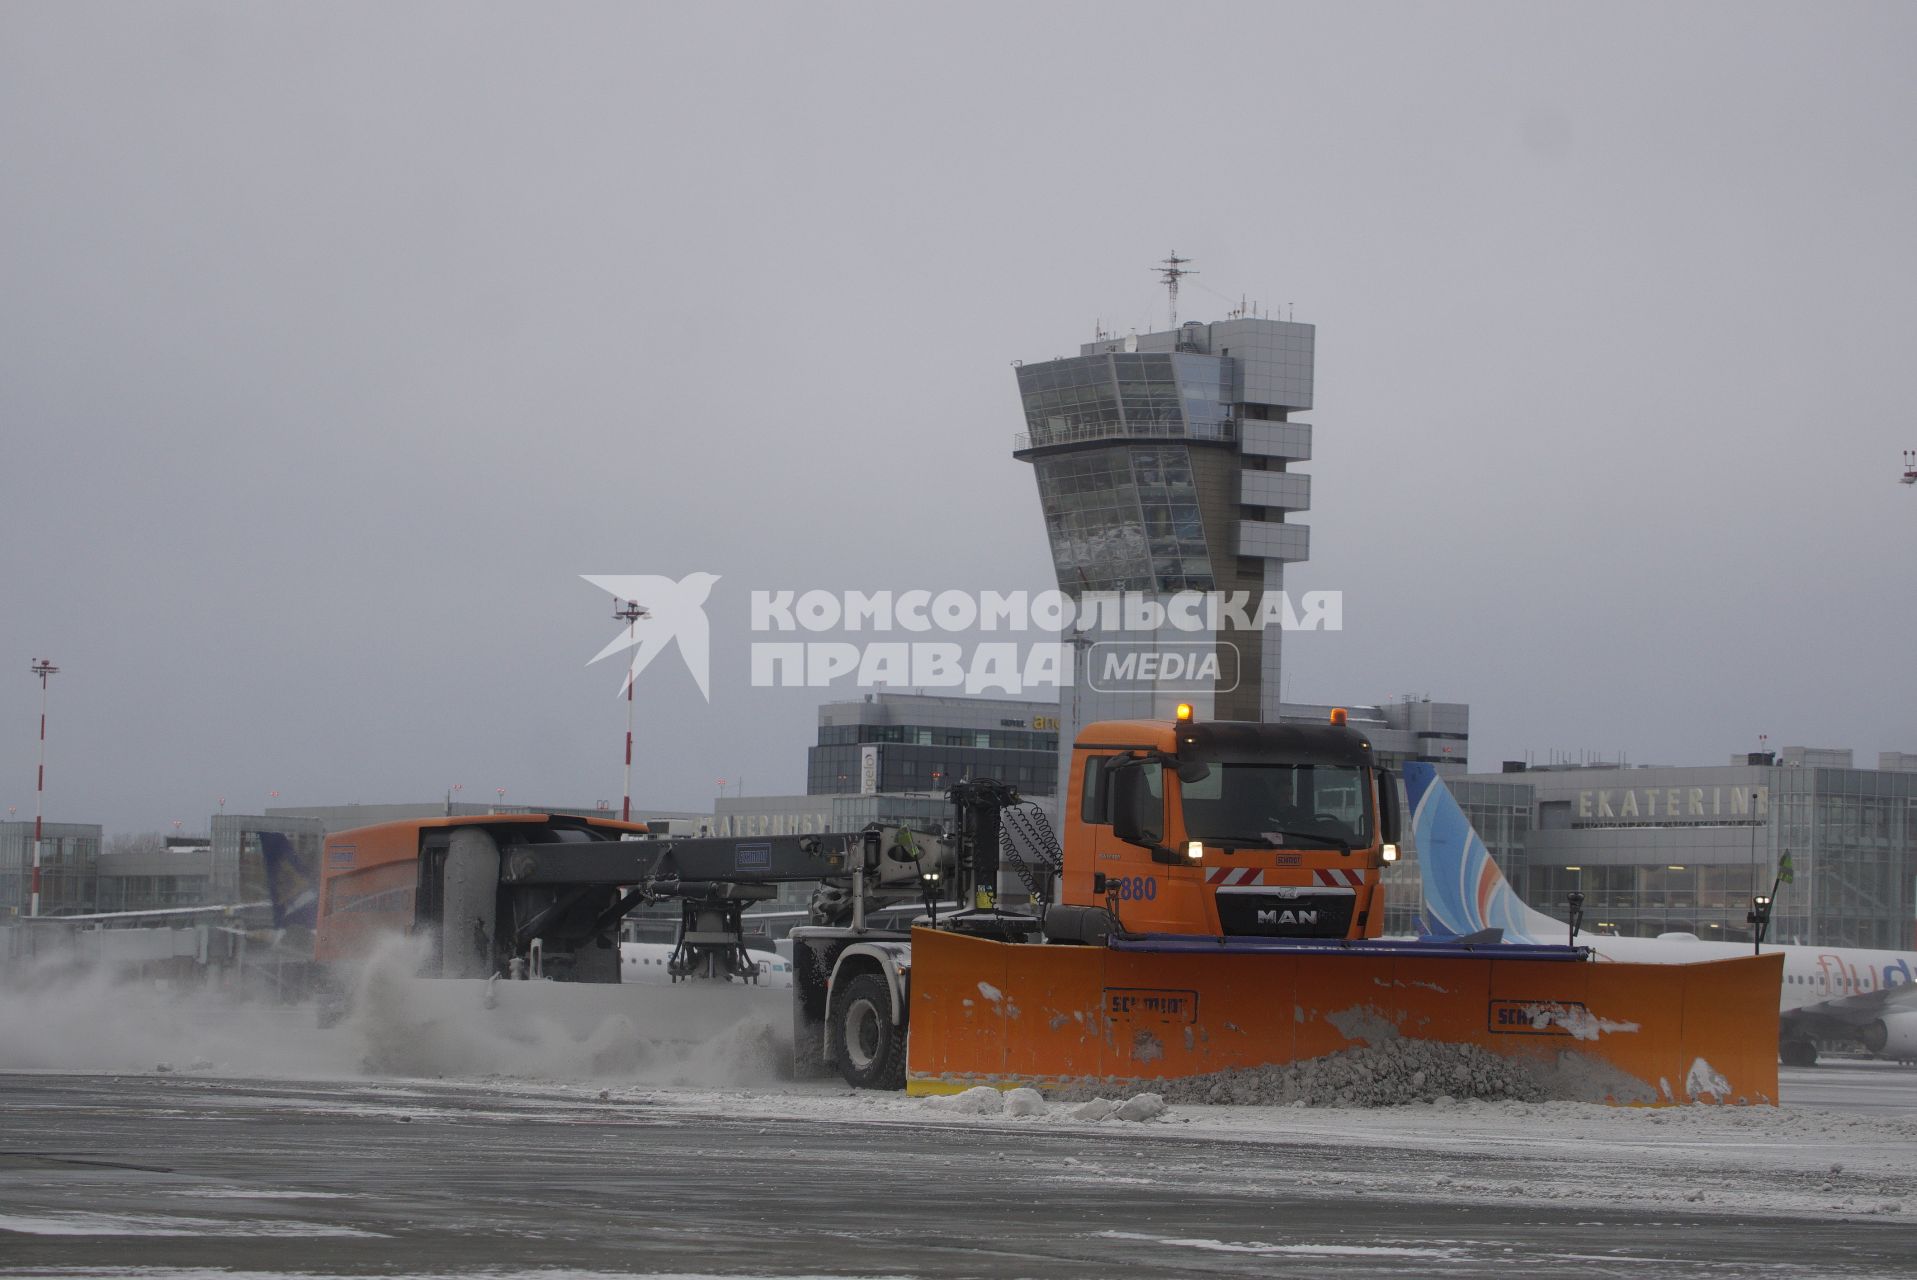 Екатеринбург. Аэропорт \'Кольцово\'. Снегоуборочные машины убирают снег с взлетно-посадочной полосы